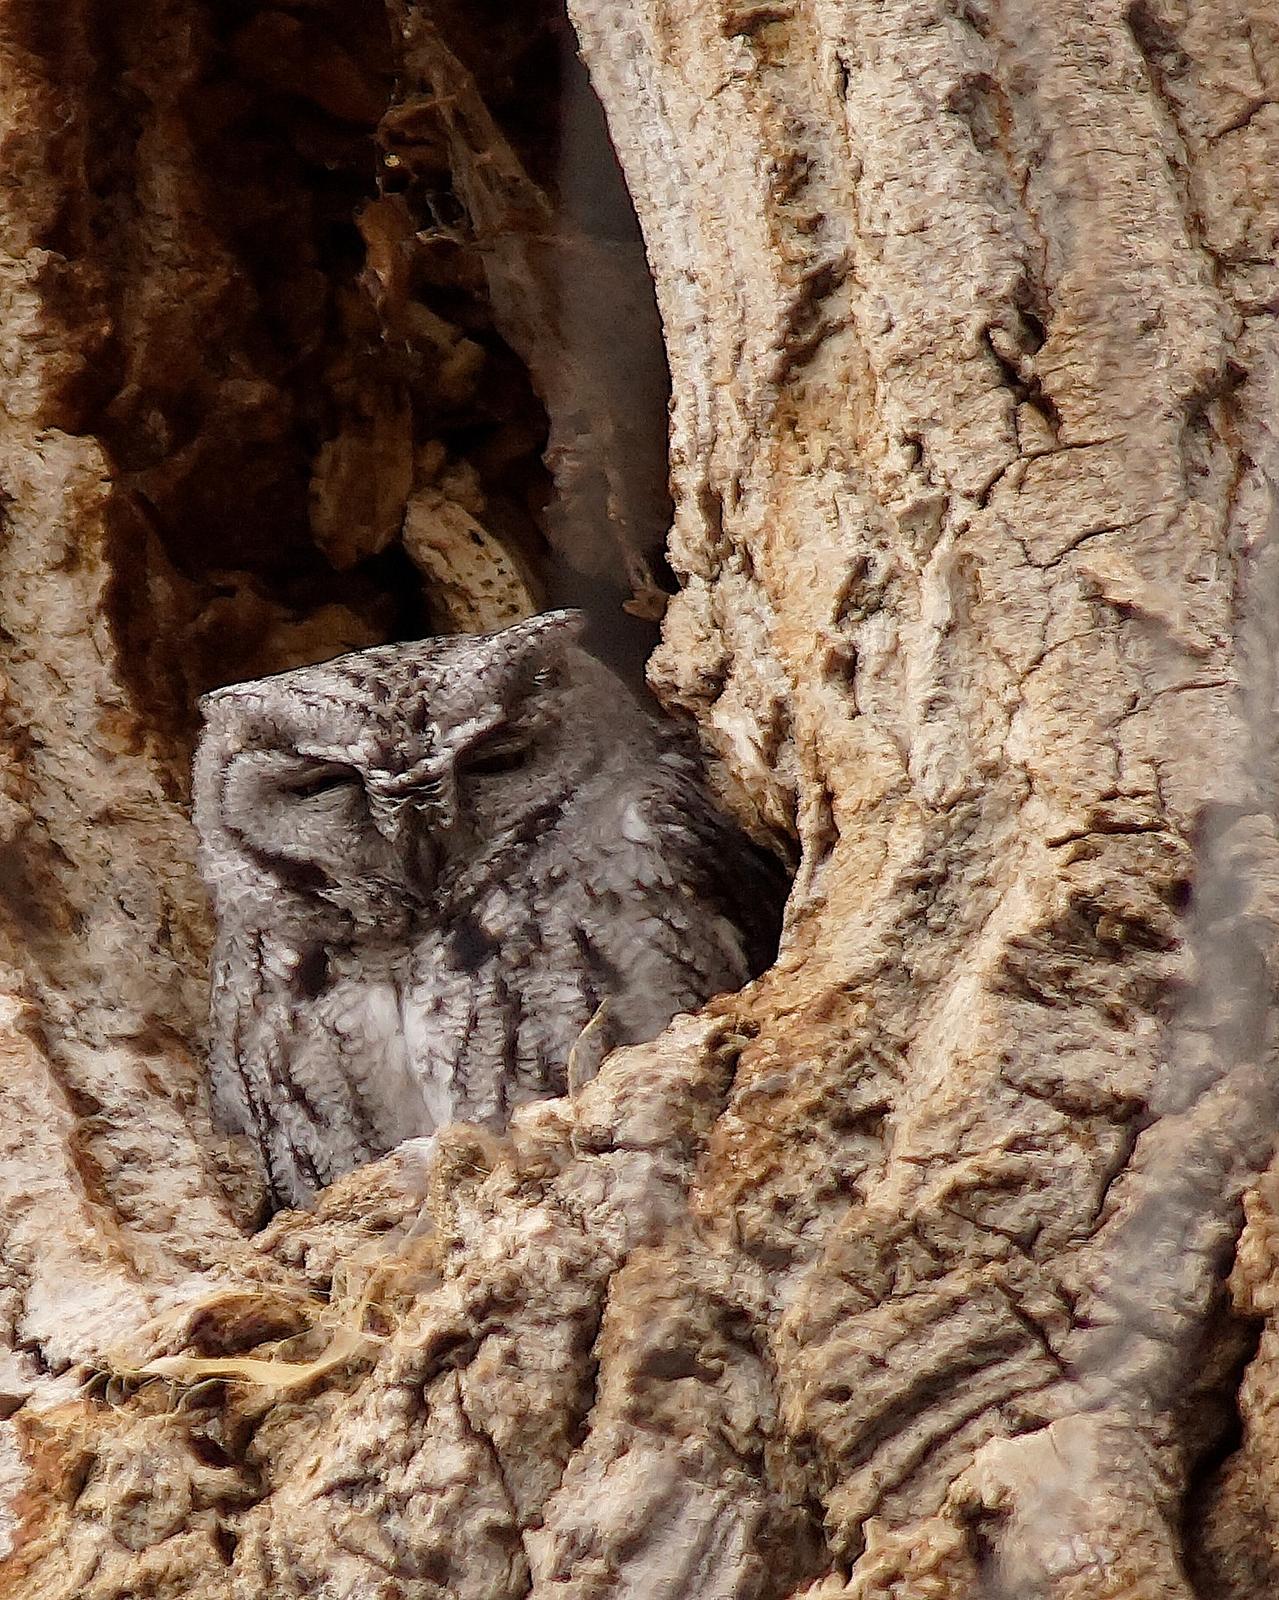 Western Screech-Owl Photo by Gerald Hoekstra